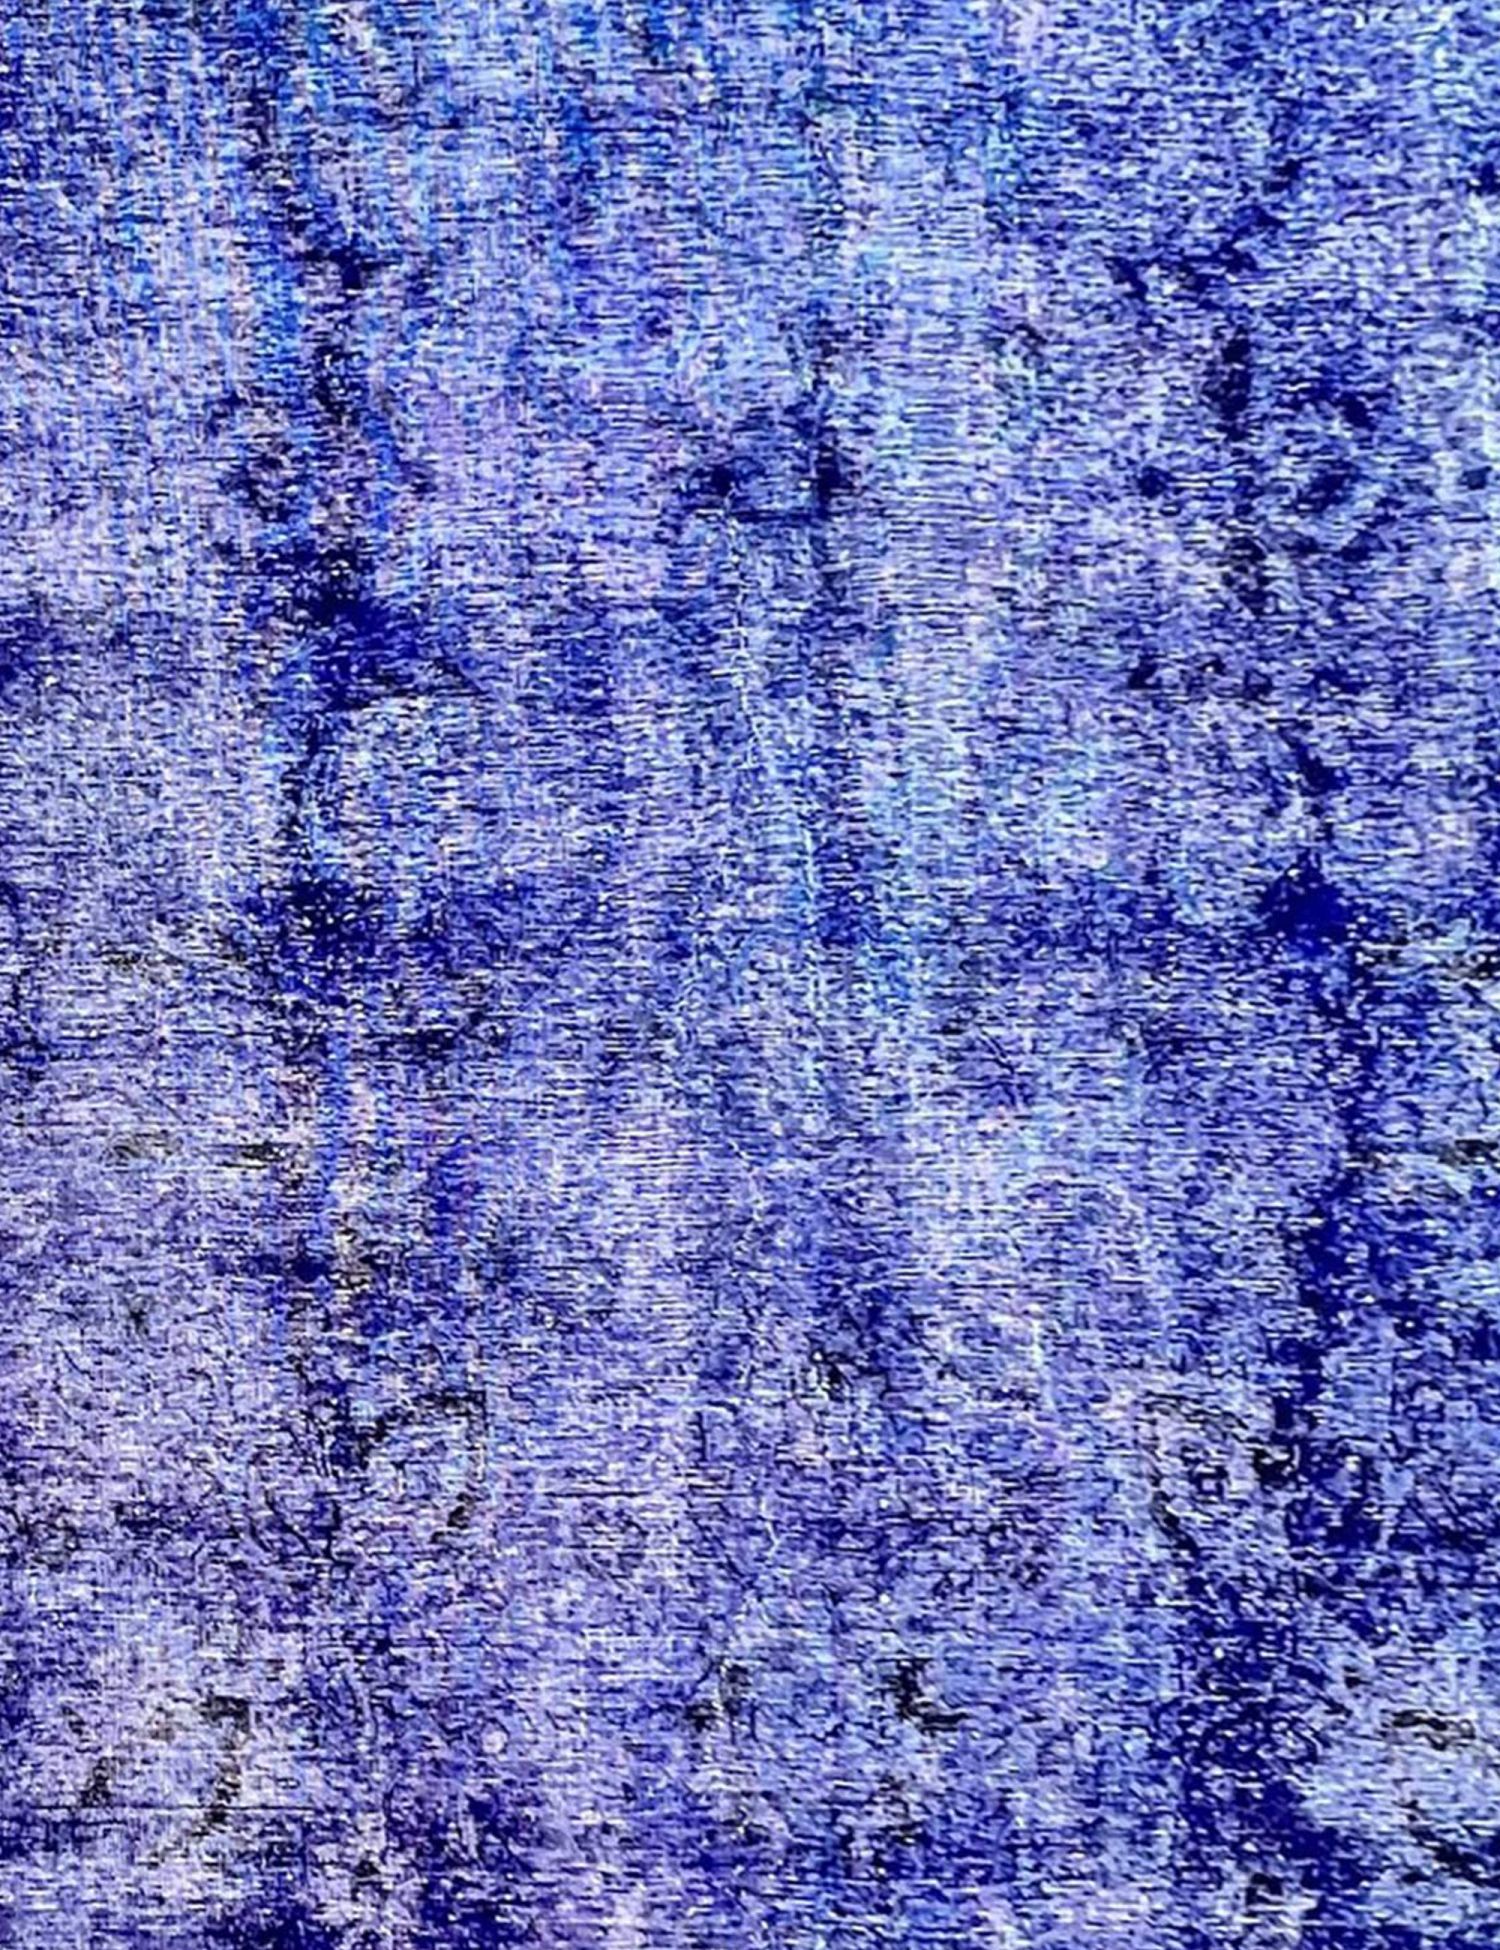 Vintage Teppich  blau <br/>275 x 275 cm